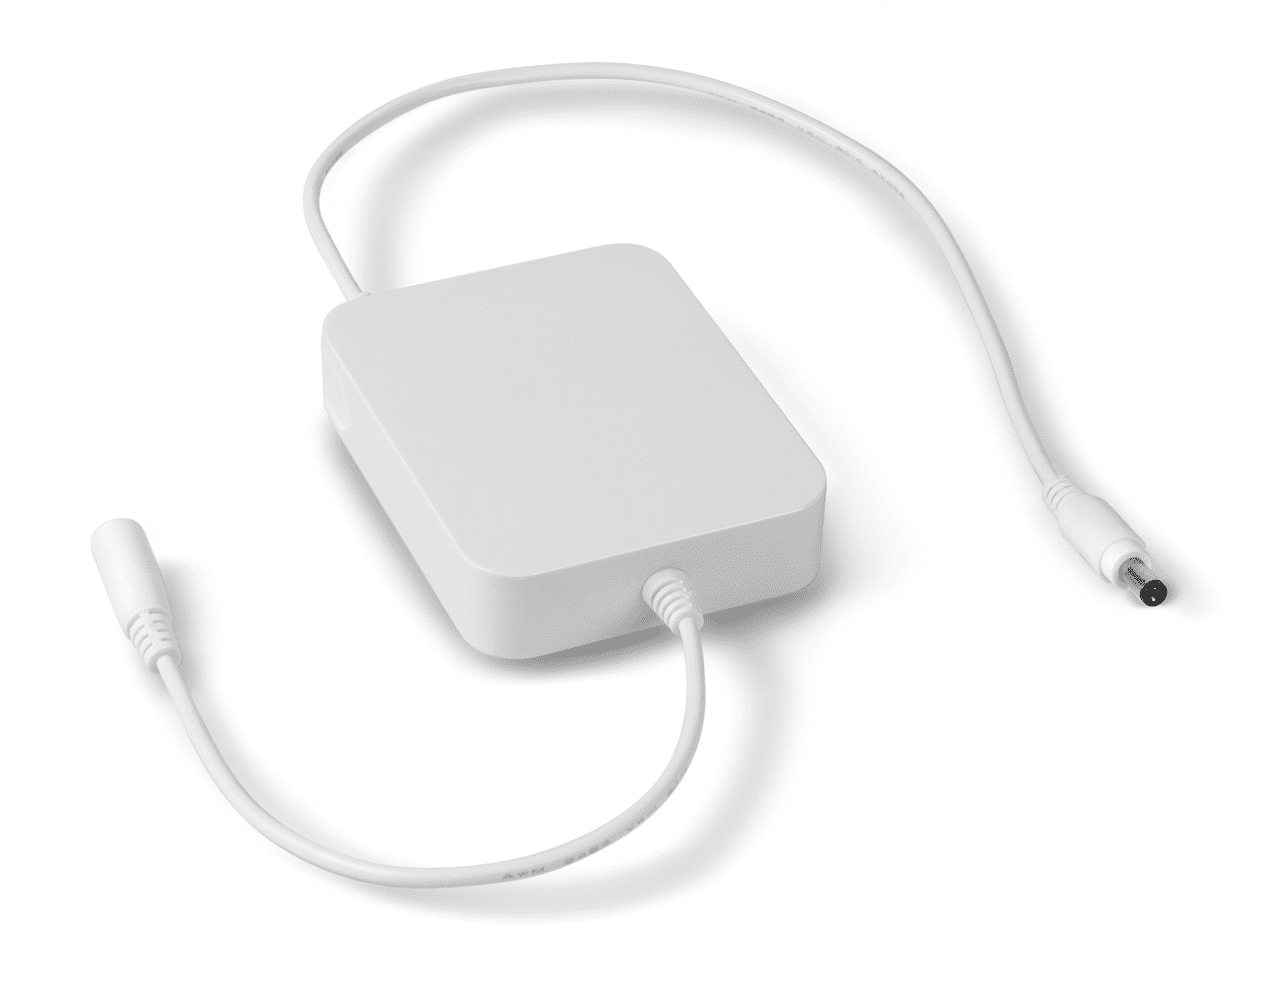 Weißer Akkubetrieb für externen Gebrauch auf weißem Hintergrund. Das Gerät besteht aus einer rechteckigen Box aus der zwei Kabel ragen.